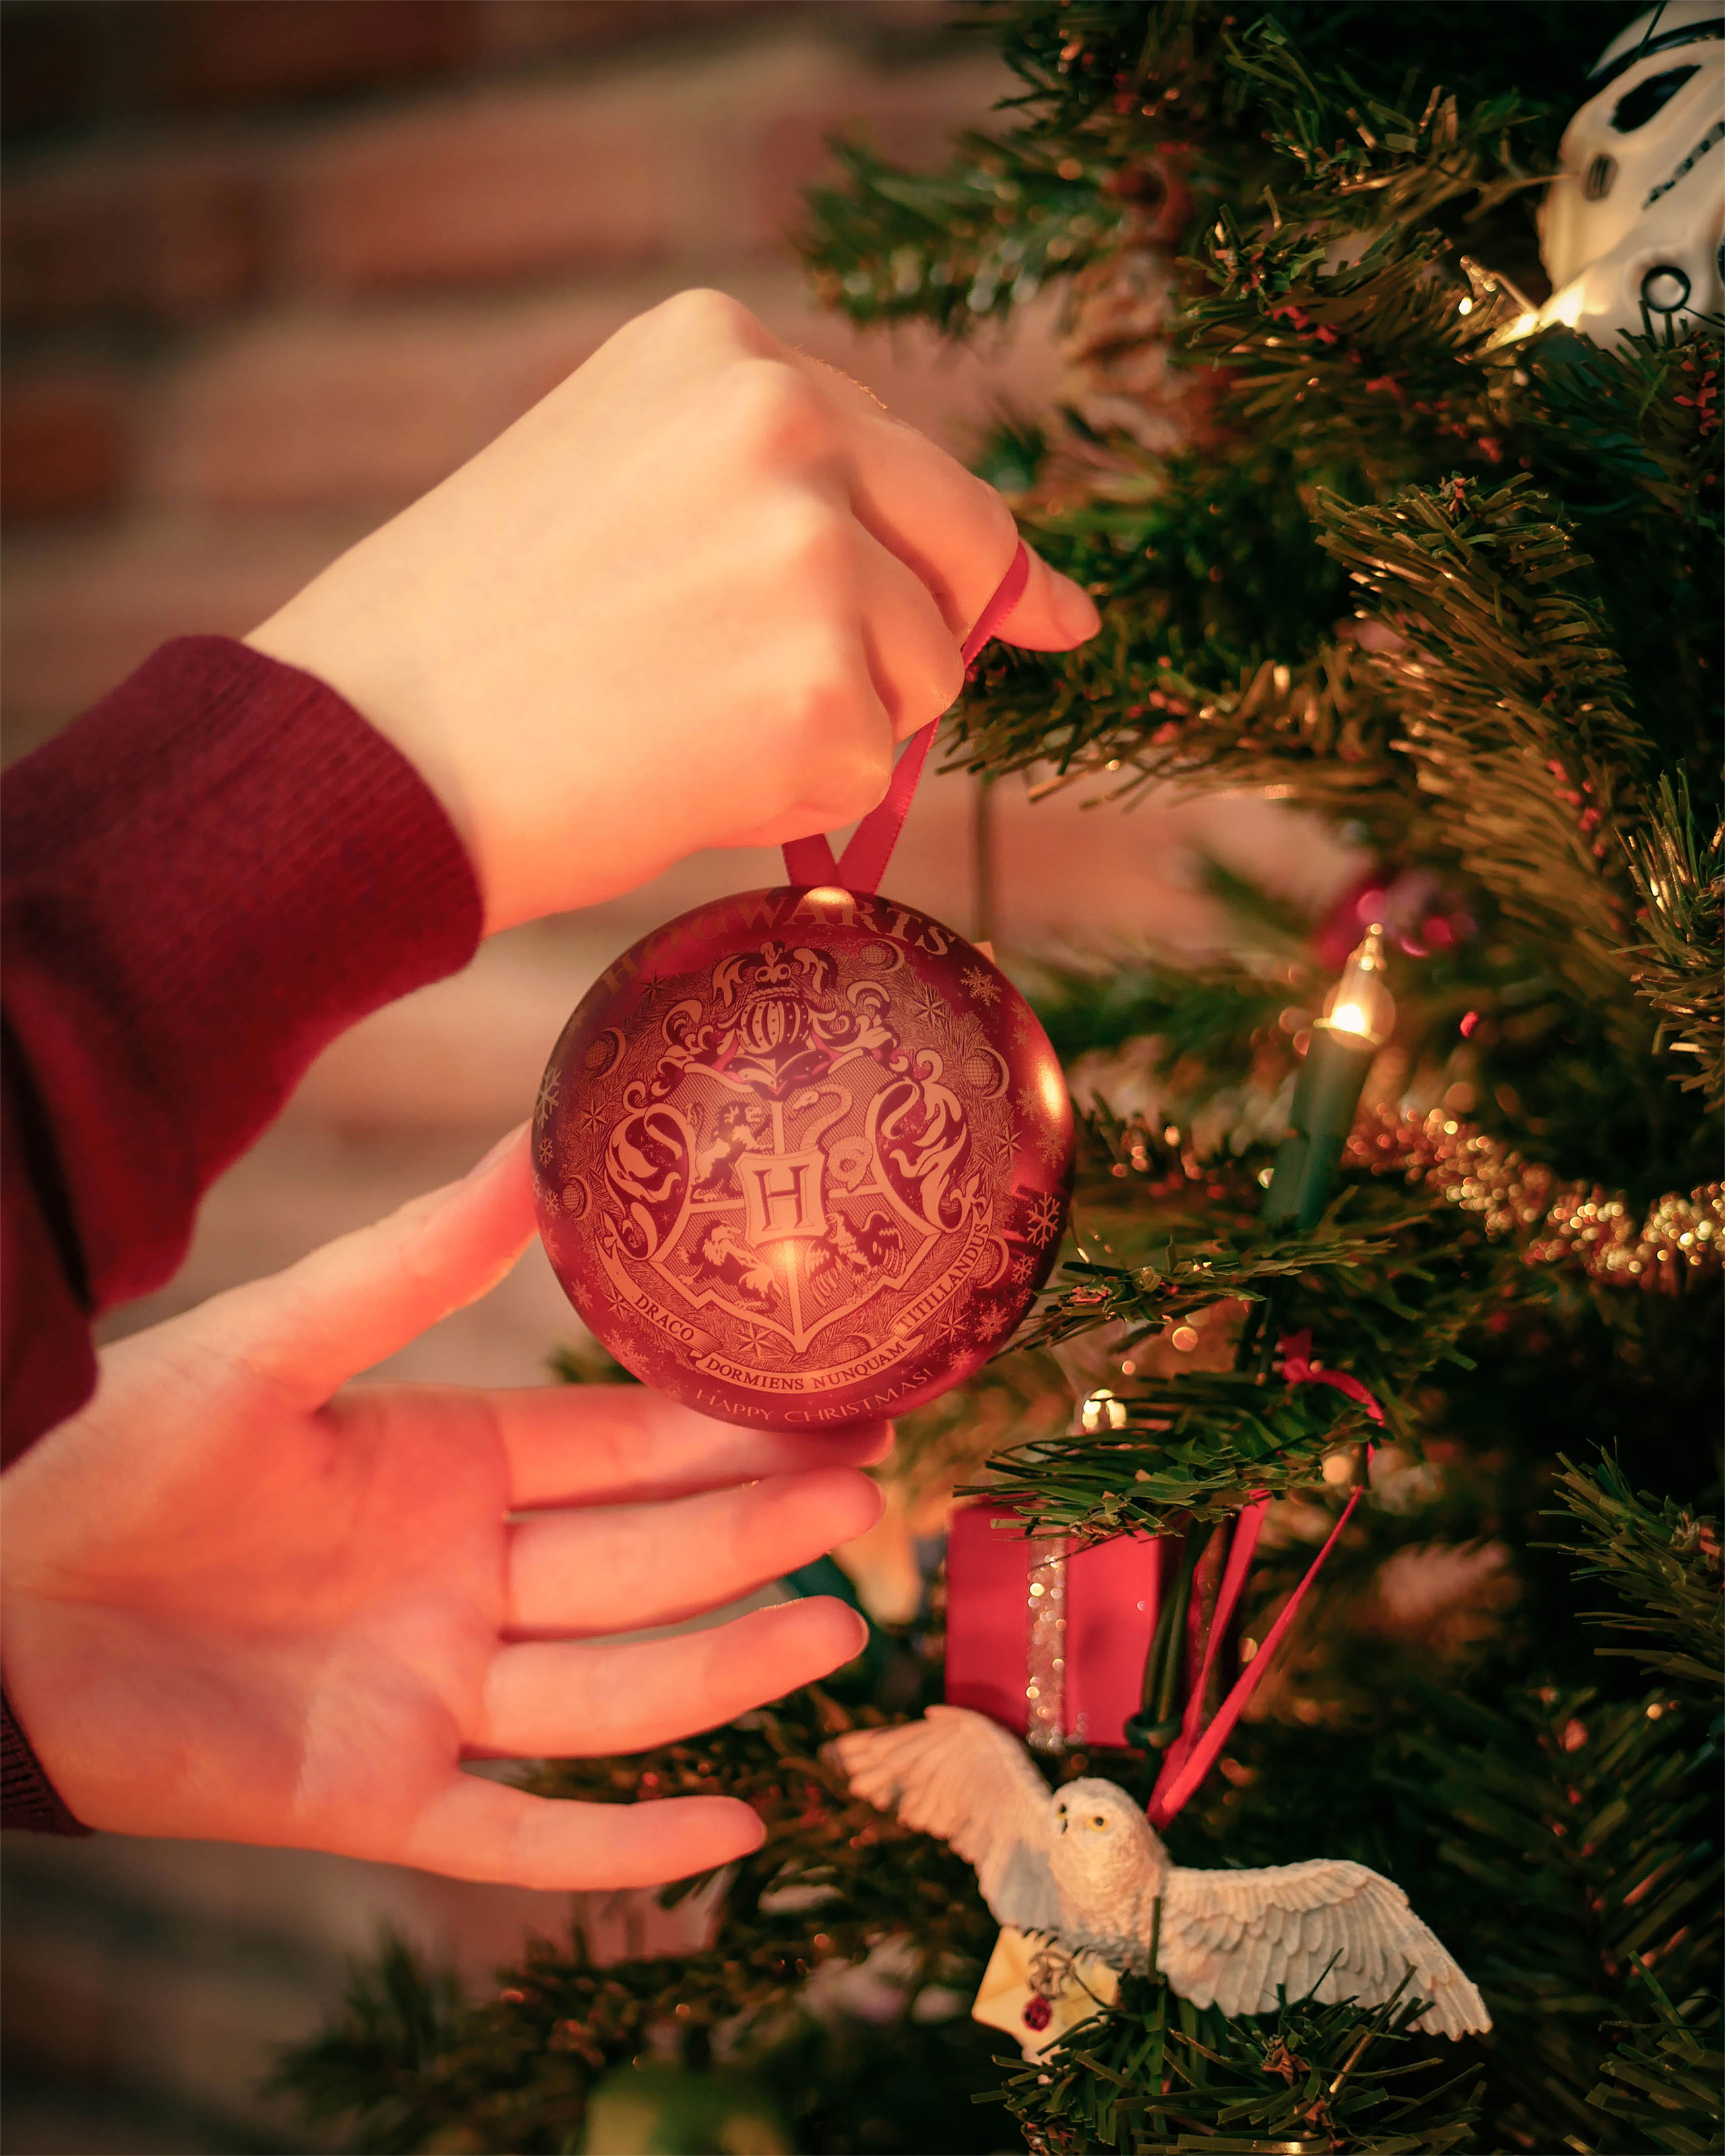 Harry Potter - Boule de Noël blason de Poudlard avec collier Vif d'Or